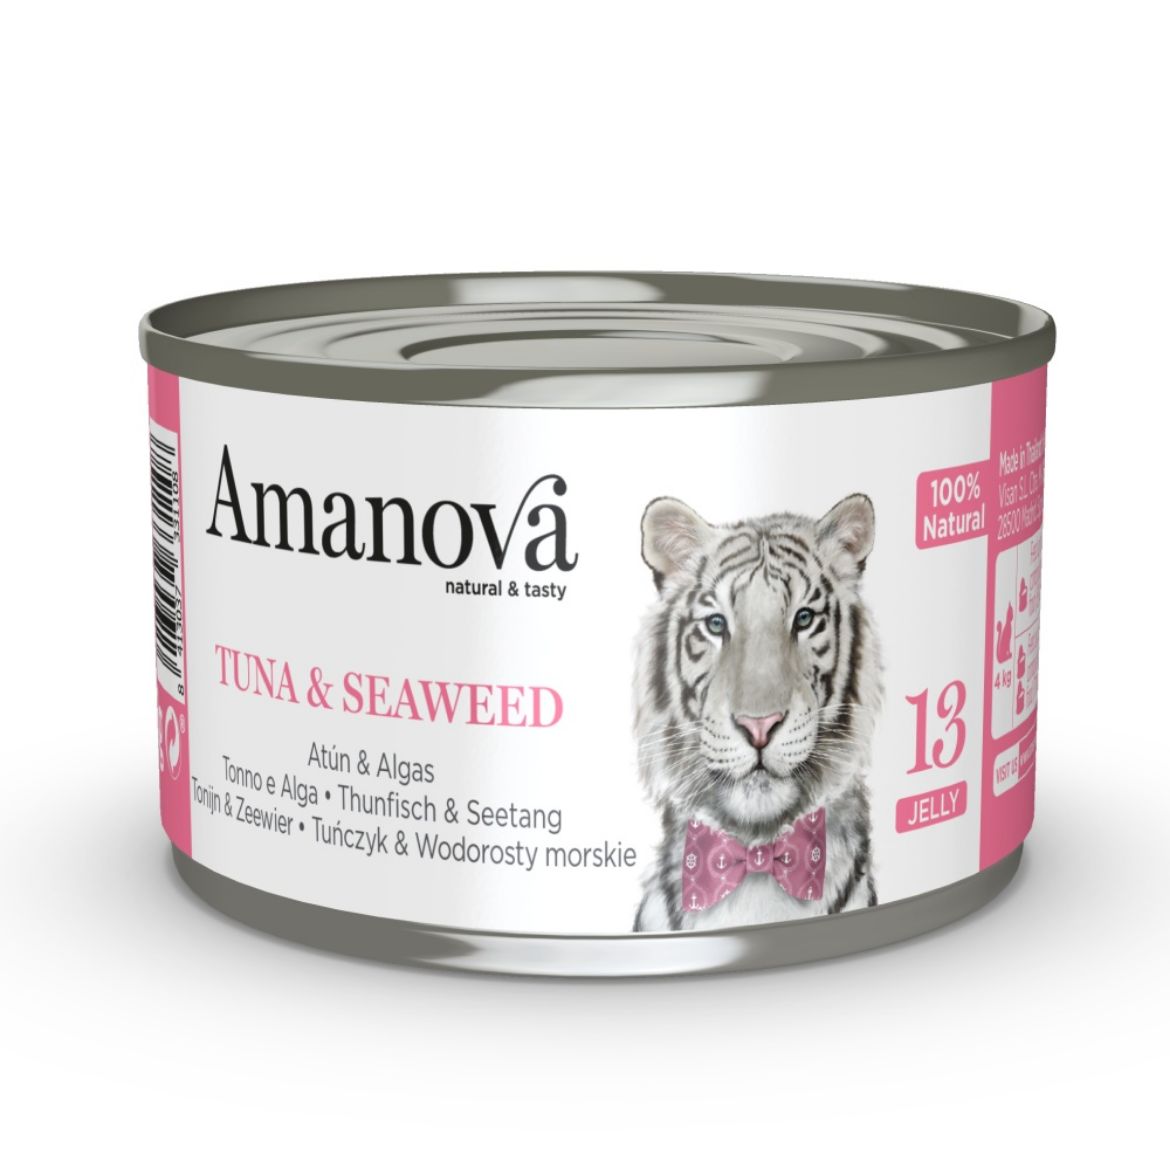 Obrázek z Amanova Cat Tuna & Seaweed (mořské řasy) v želé (13), konzerva 70 g 